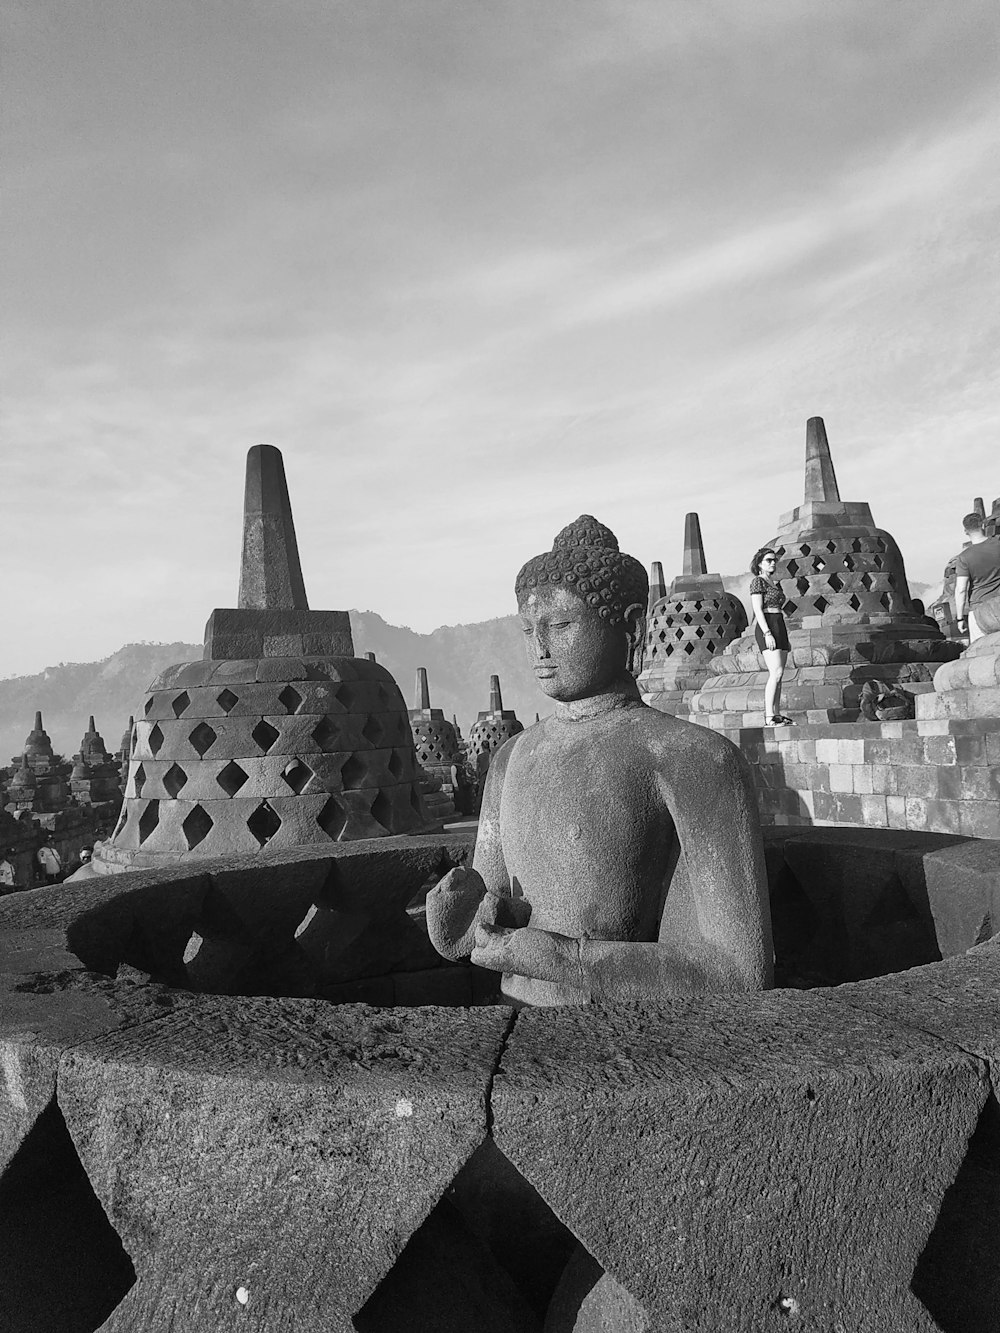 photo en niveaux de gris de la statue de Bouddha